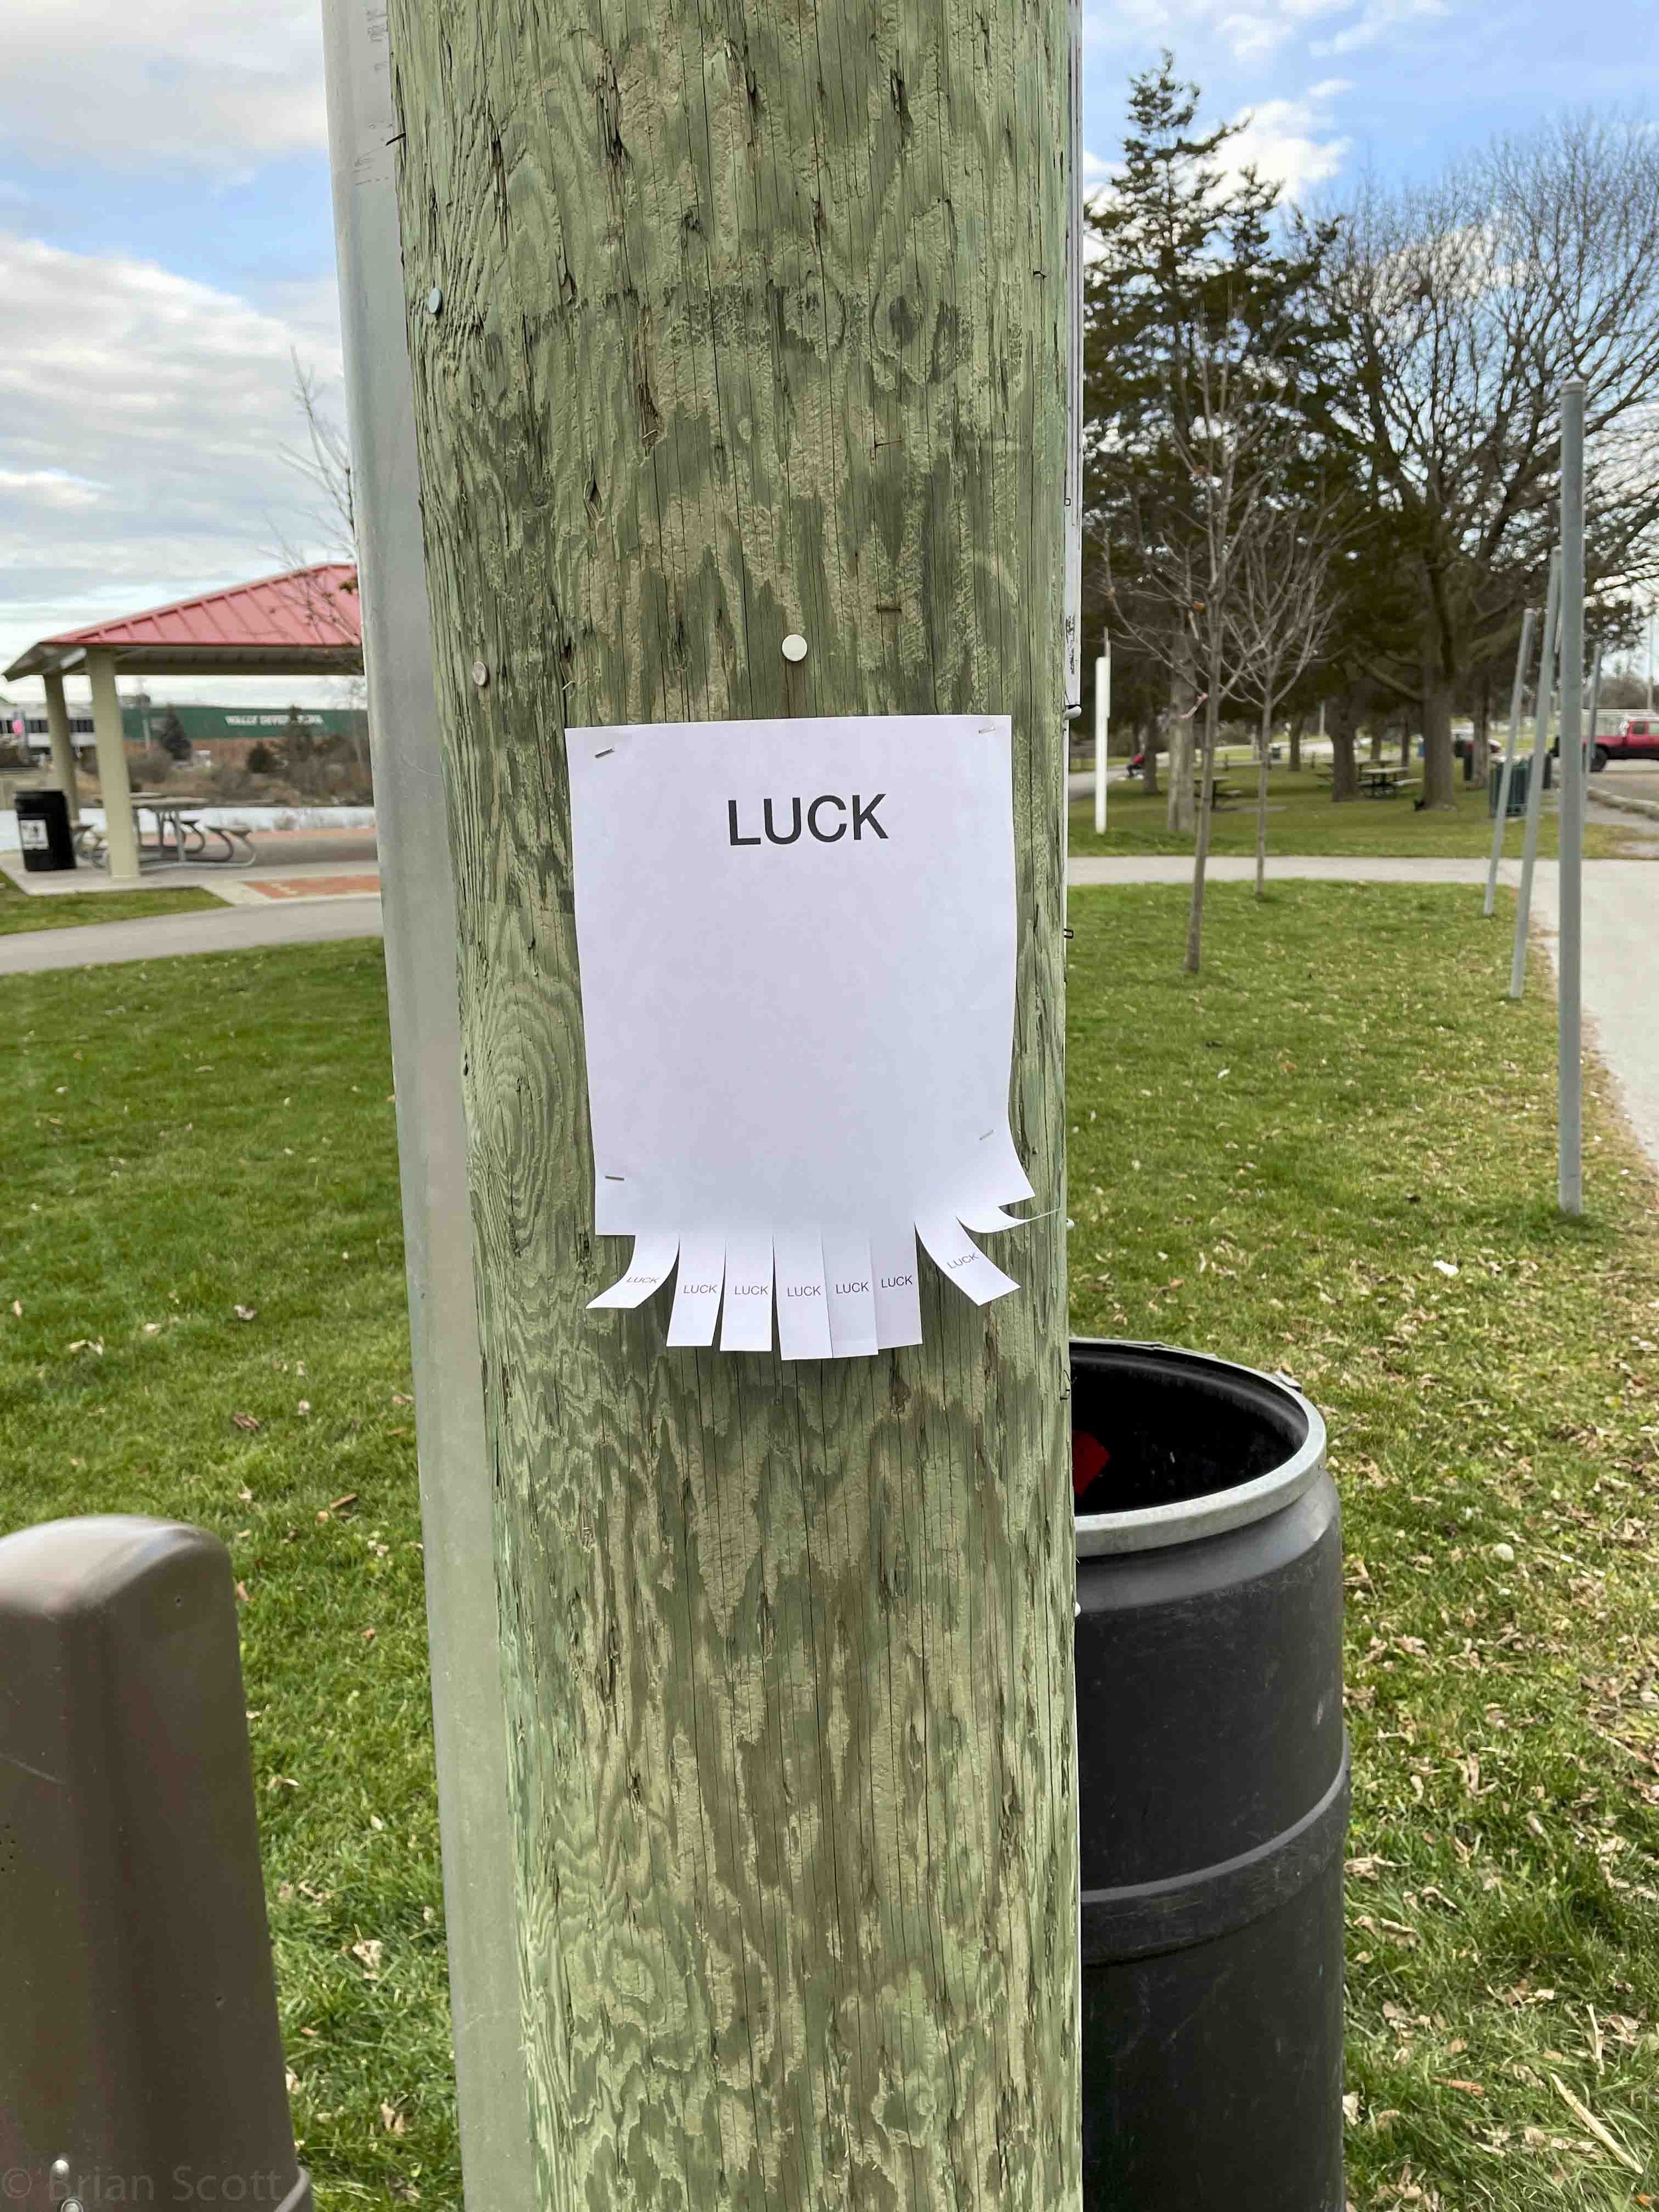 'Luck'